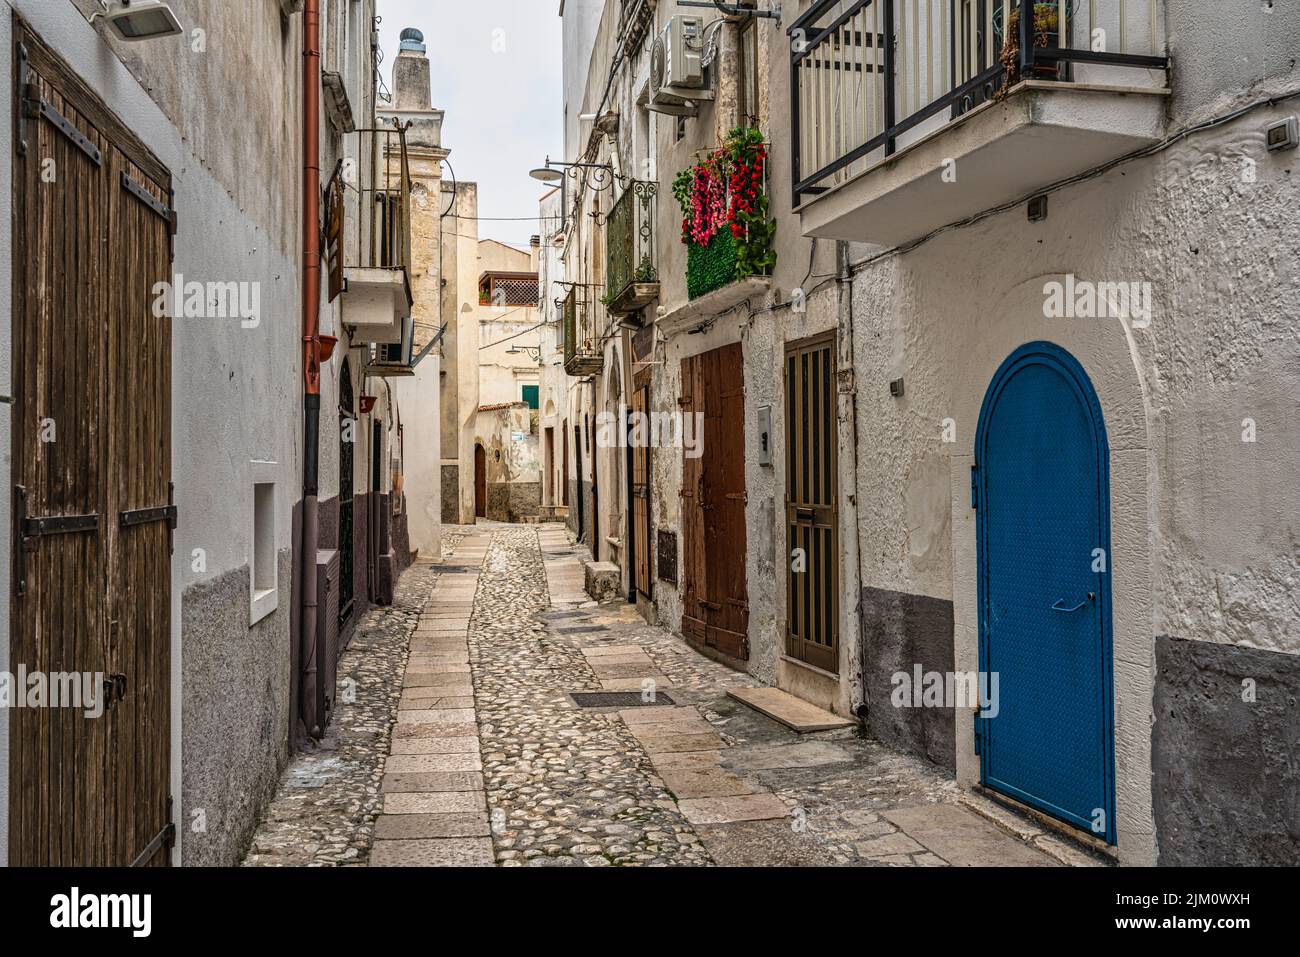 Característico callejón con la escalera empedrada típica de los pequeños pueblos costeros de Puglia. Peschici, provincia de Foggia, Apulia, Italia, Europa Foto de stock